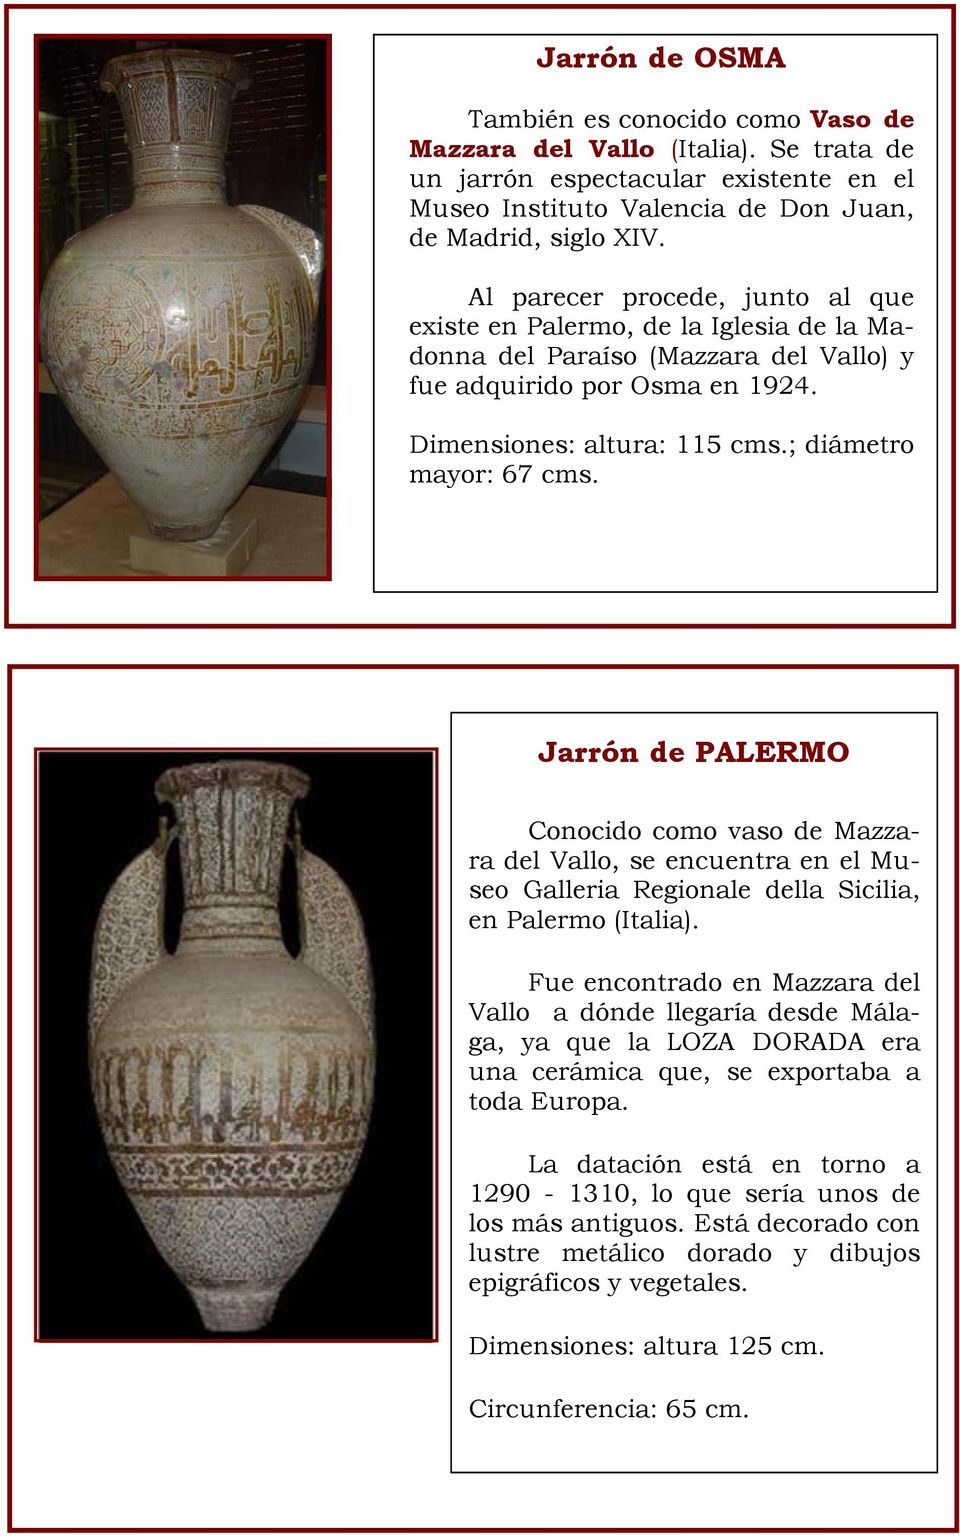 Jarrón de PALERMO Conocido como vaso de Mazzara del Vallo, se encuentra en el Museo Galleria Regionale della Sicilia, en Palermo (Italia).